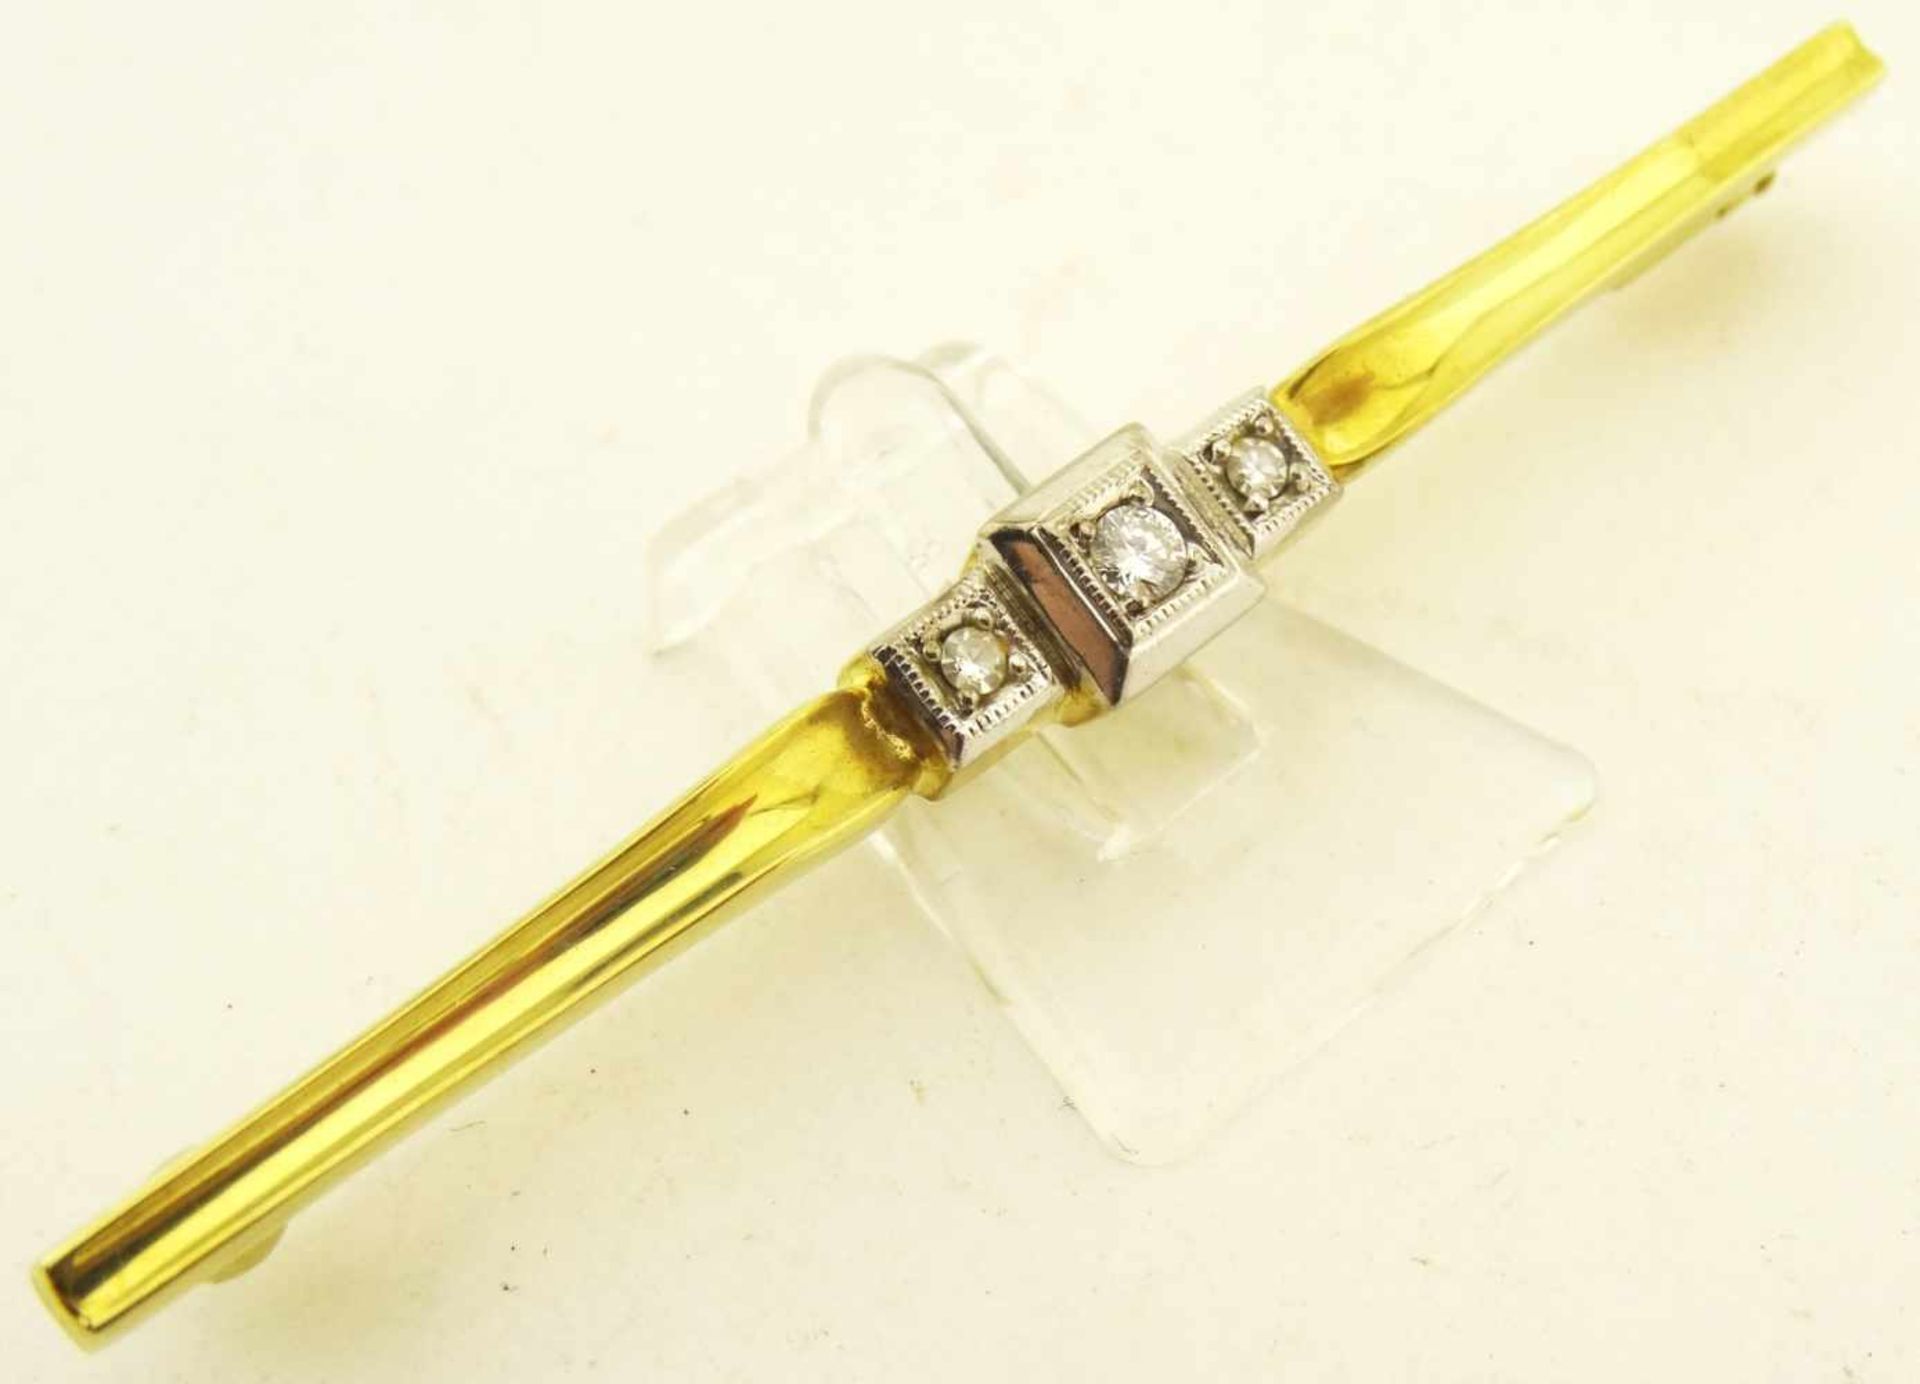 Nadel Diamantrosen und Brillant 585 Gold ges. Länge 61mm, Diamanten zus. ca. 0,10ct., Gewicht ges. - Bild 2 aus 3